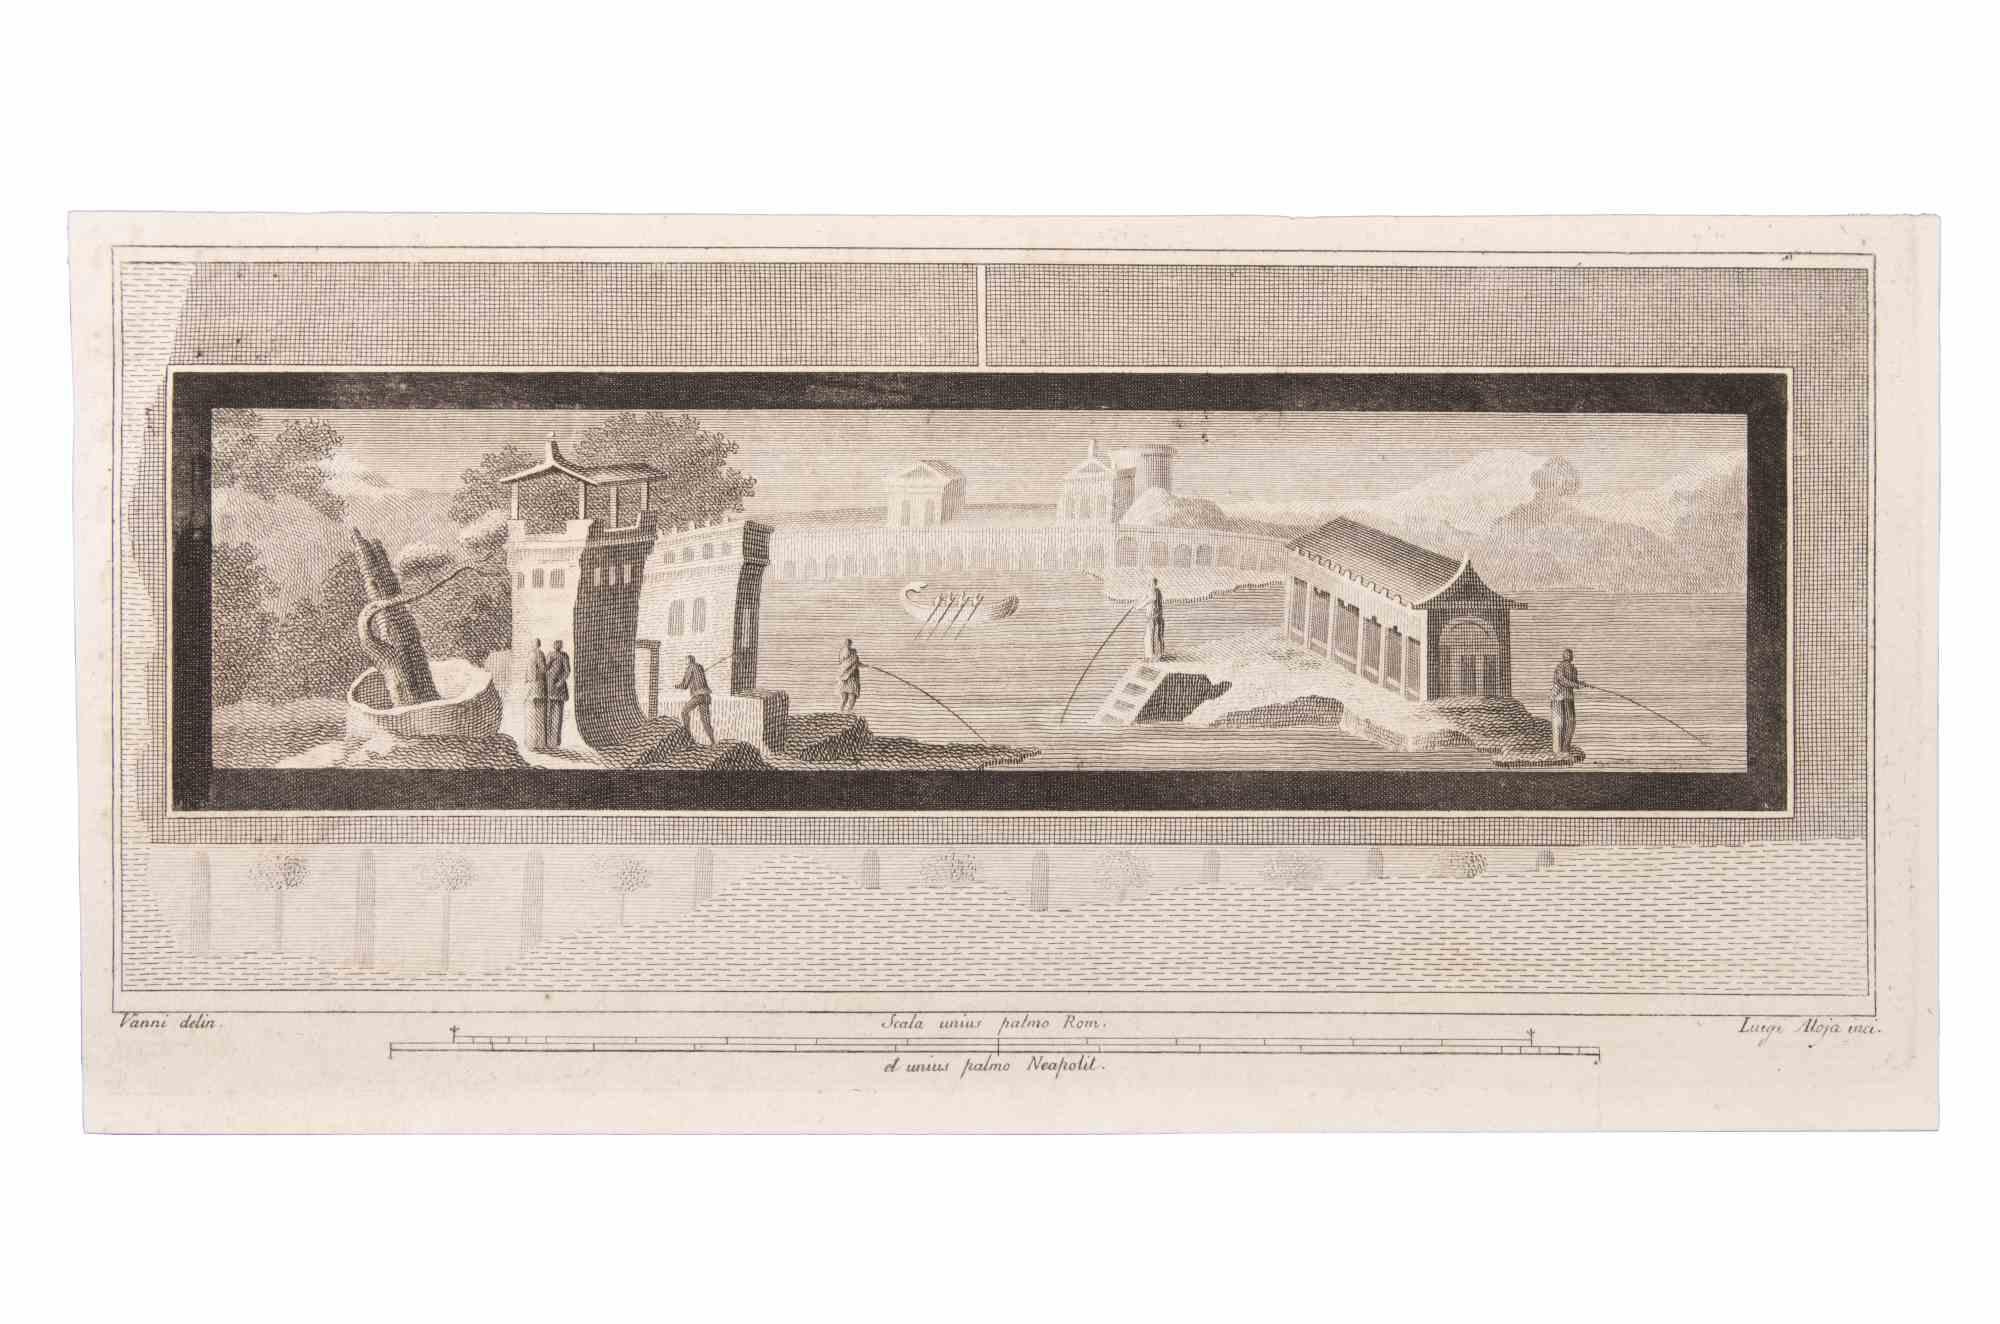 Seascape With Monuments est une gravure réalisée par  Luigi Aloja (1783-1837).

La gravure appartient à la suite d'estampes "Antiquités d'Herculanum exposées" (titre original : "Le Antichità di Ercolano Esposte"), un volume de huit gravures des